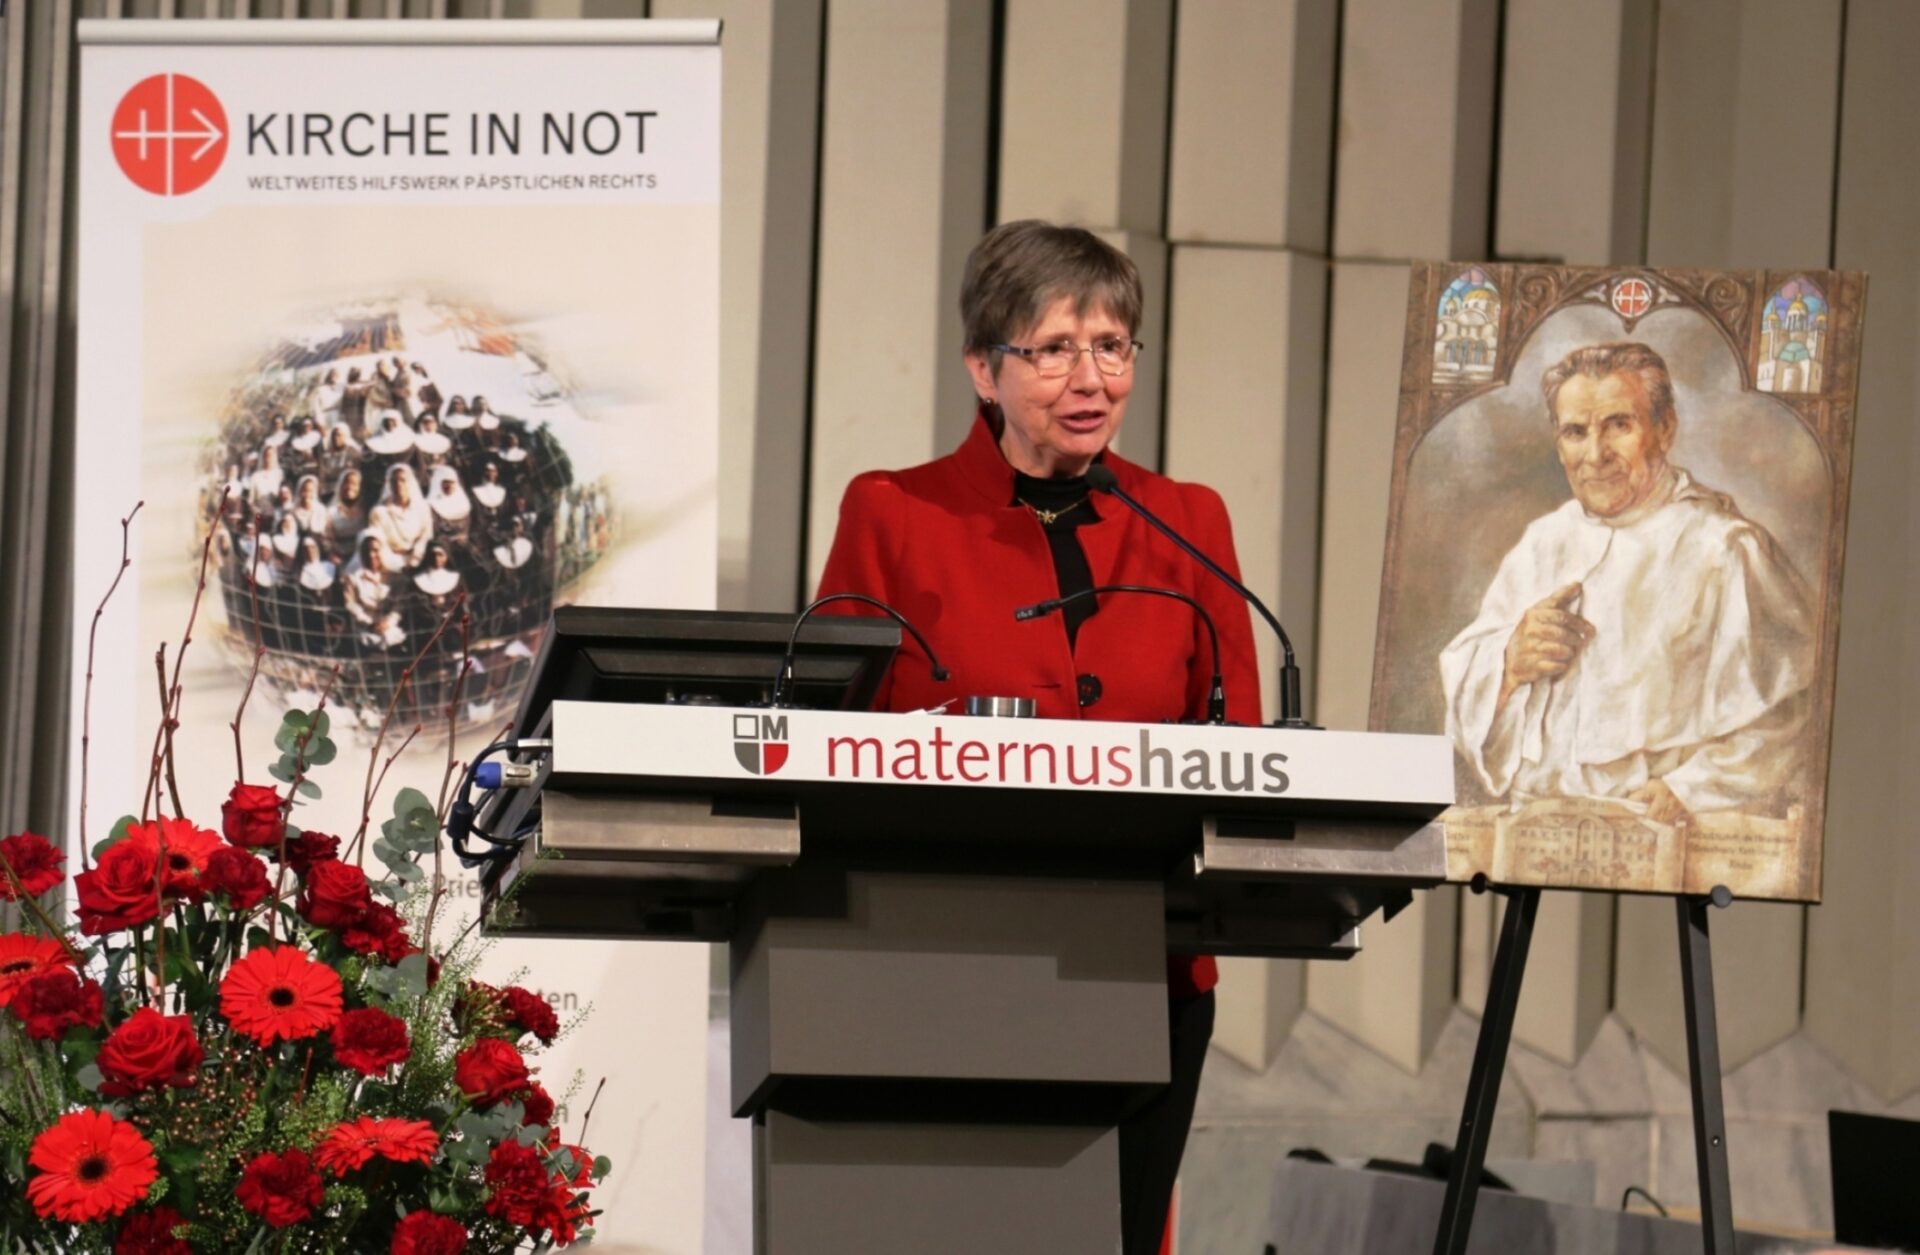 Antonia Willemsen nel gennaio 2020 alla commemorazione annuale di padre Werenfried van
Straaten a Colonia.